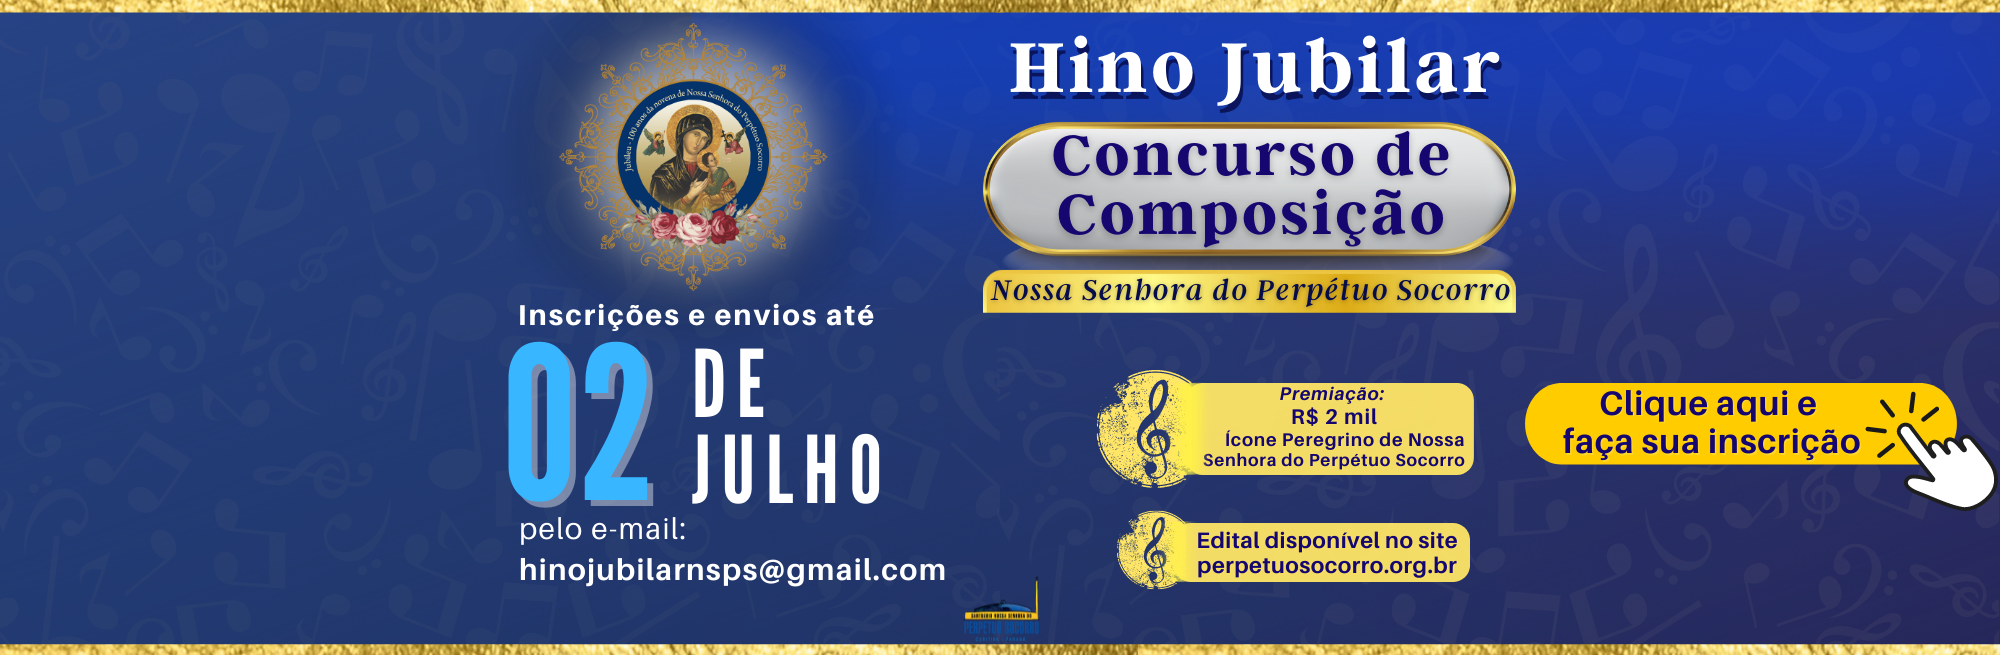 Concurso Cultural de Composição do Hino Jubilar: faça sua inscrição aqui.